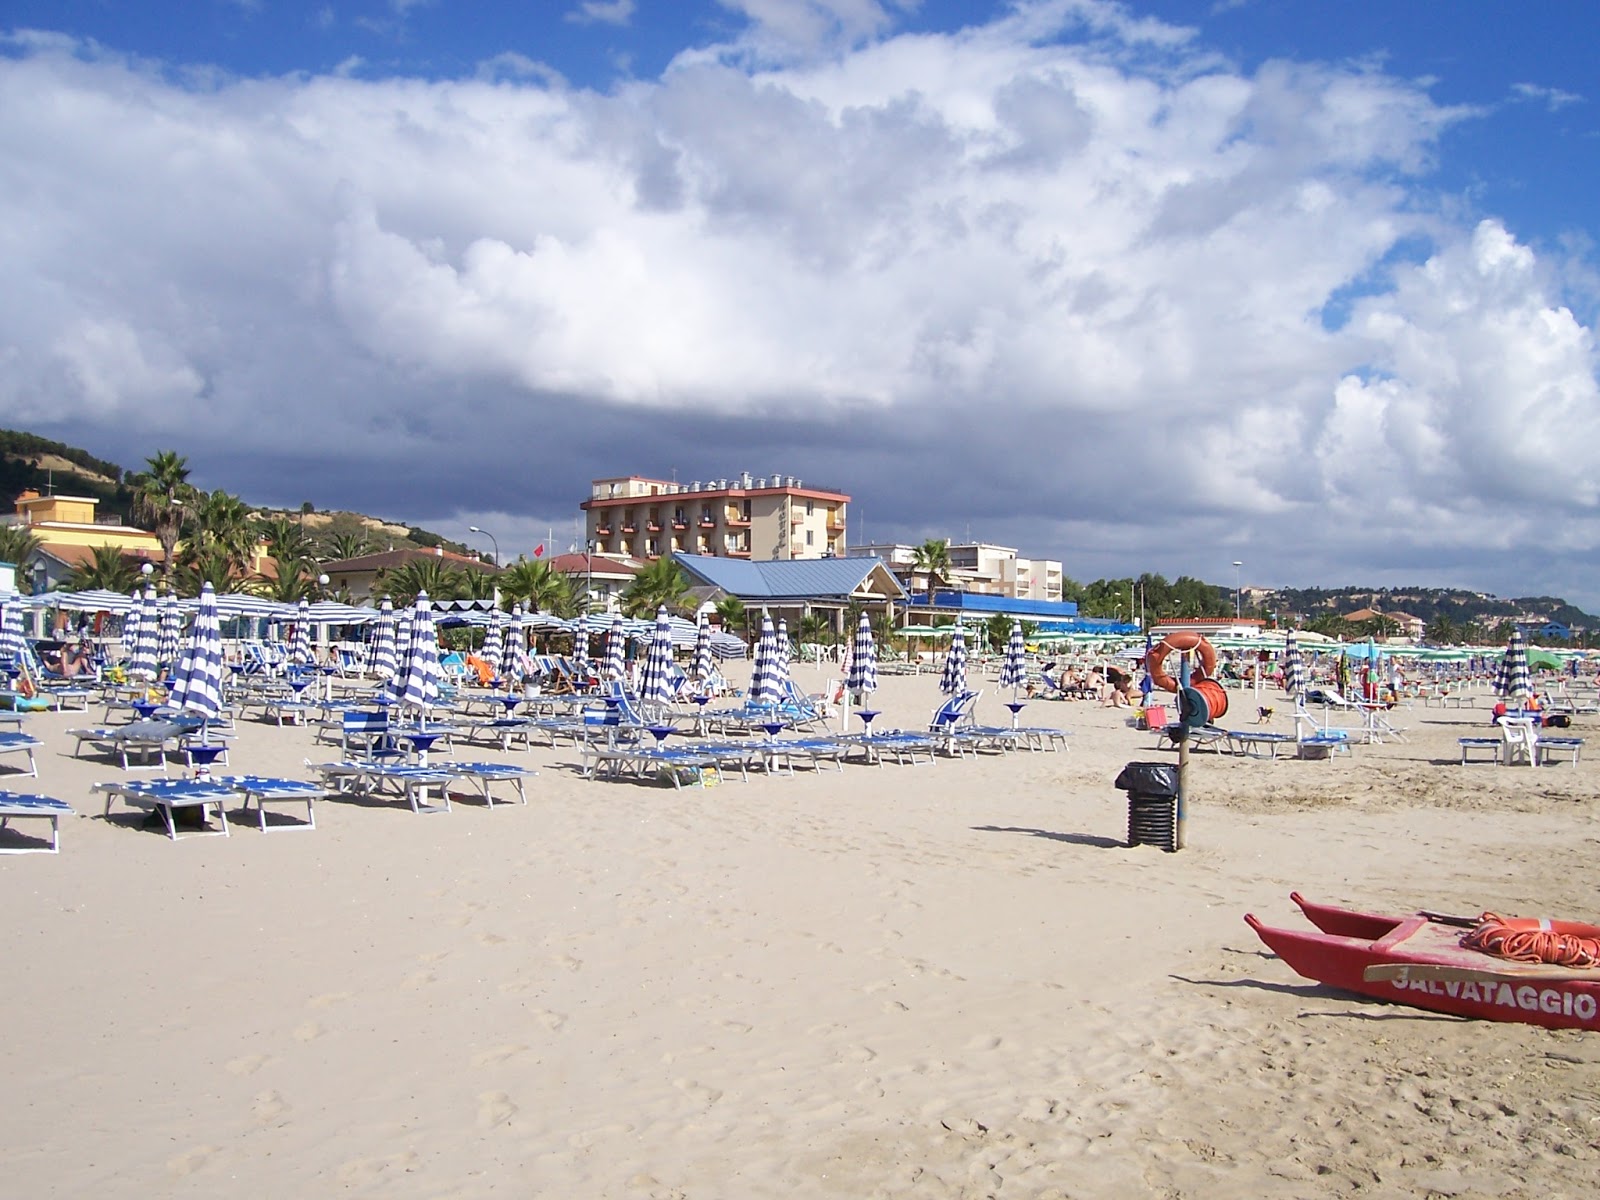 Fotografie cu Colibri' Beach - locul popular printre cunoscătorii de relaxare